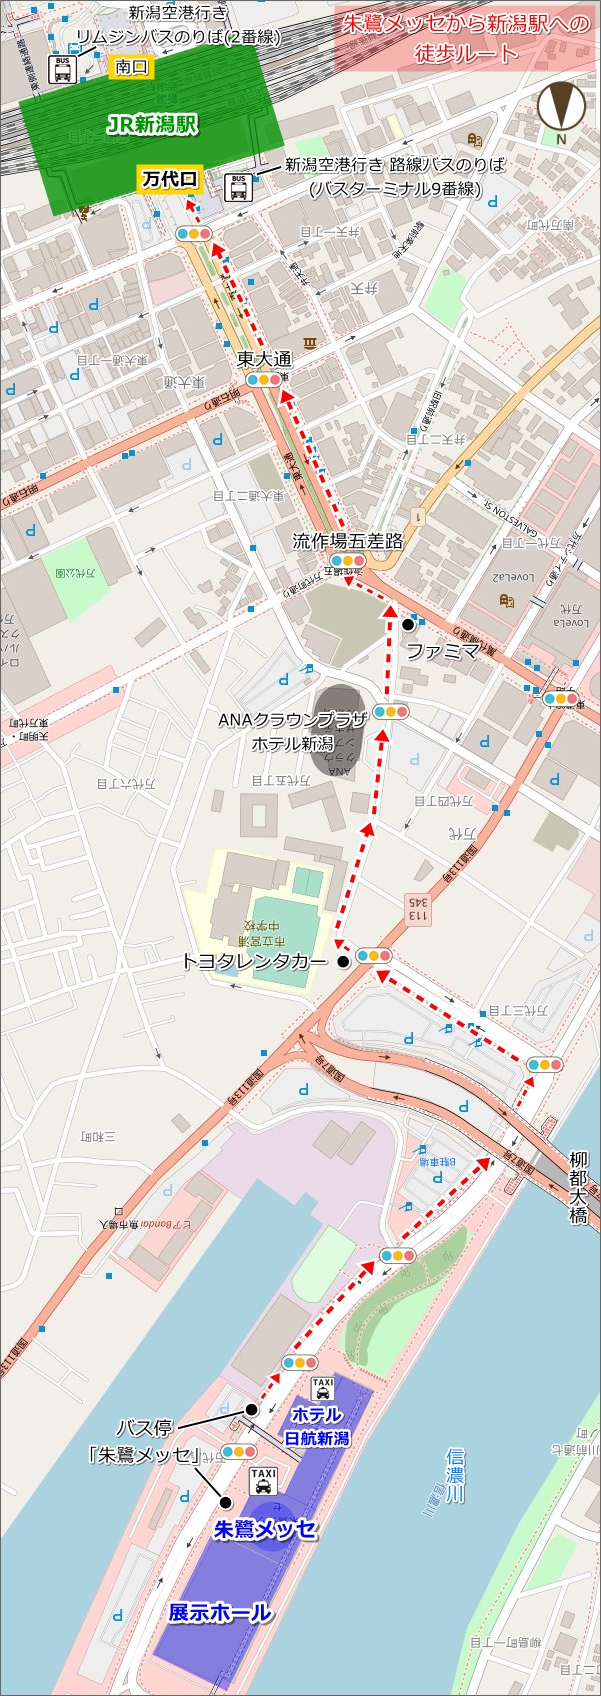 朱鷺メッセから新潟駅への徒歩ルート(地図)01